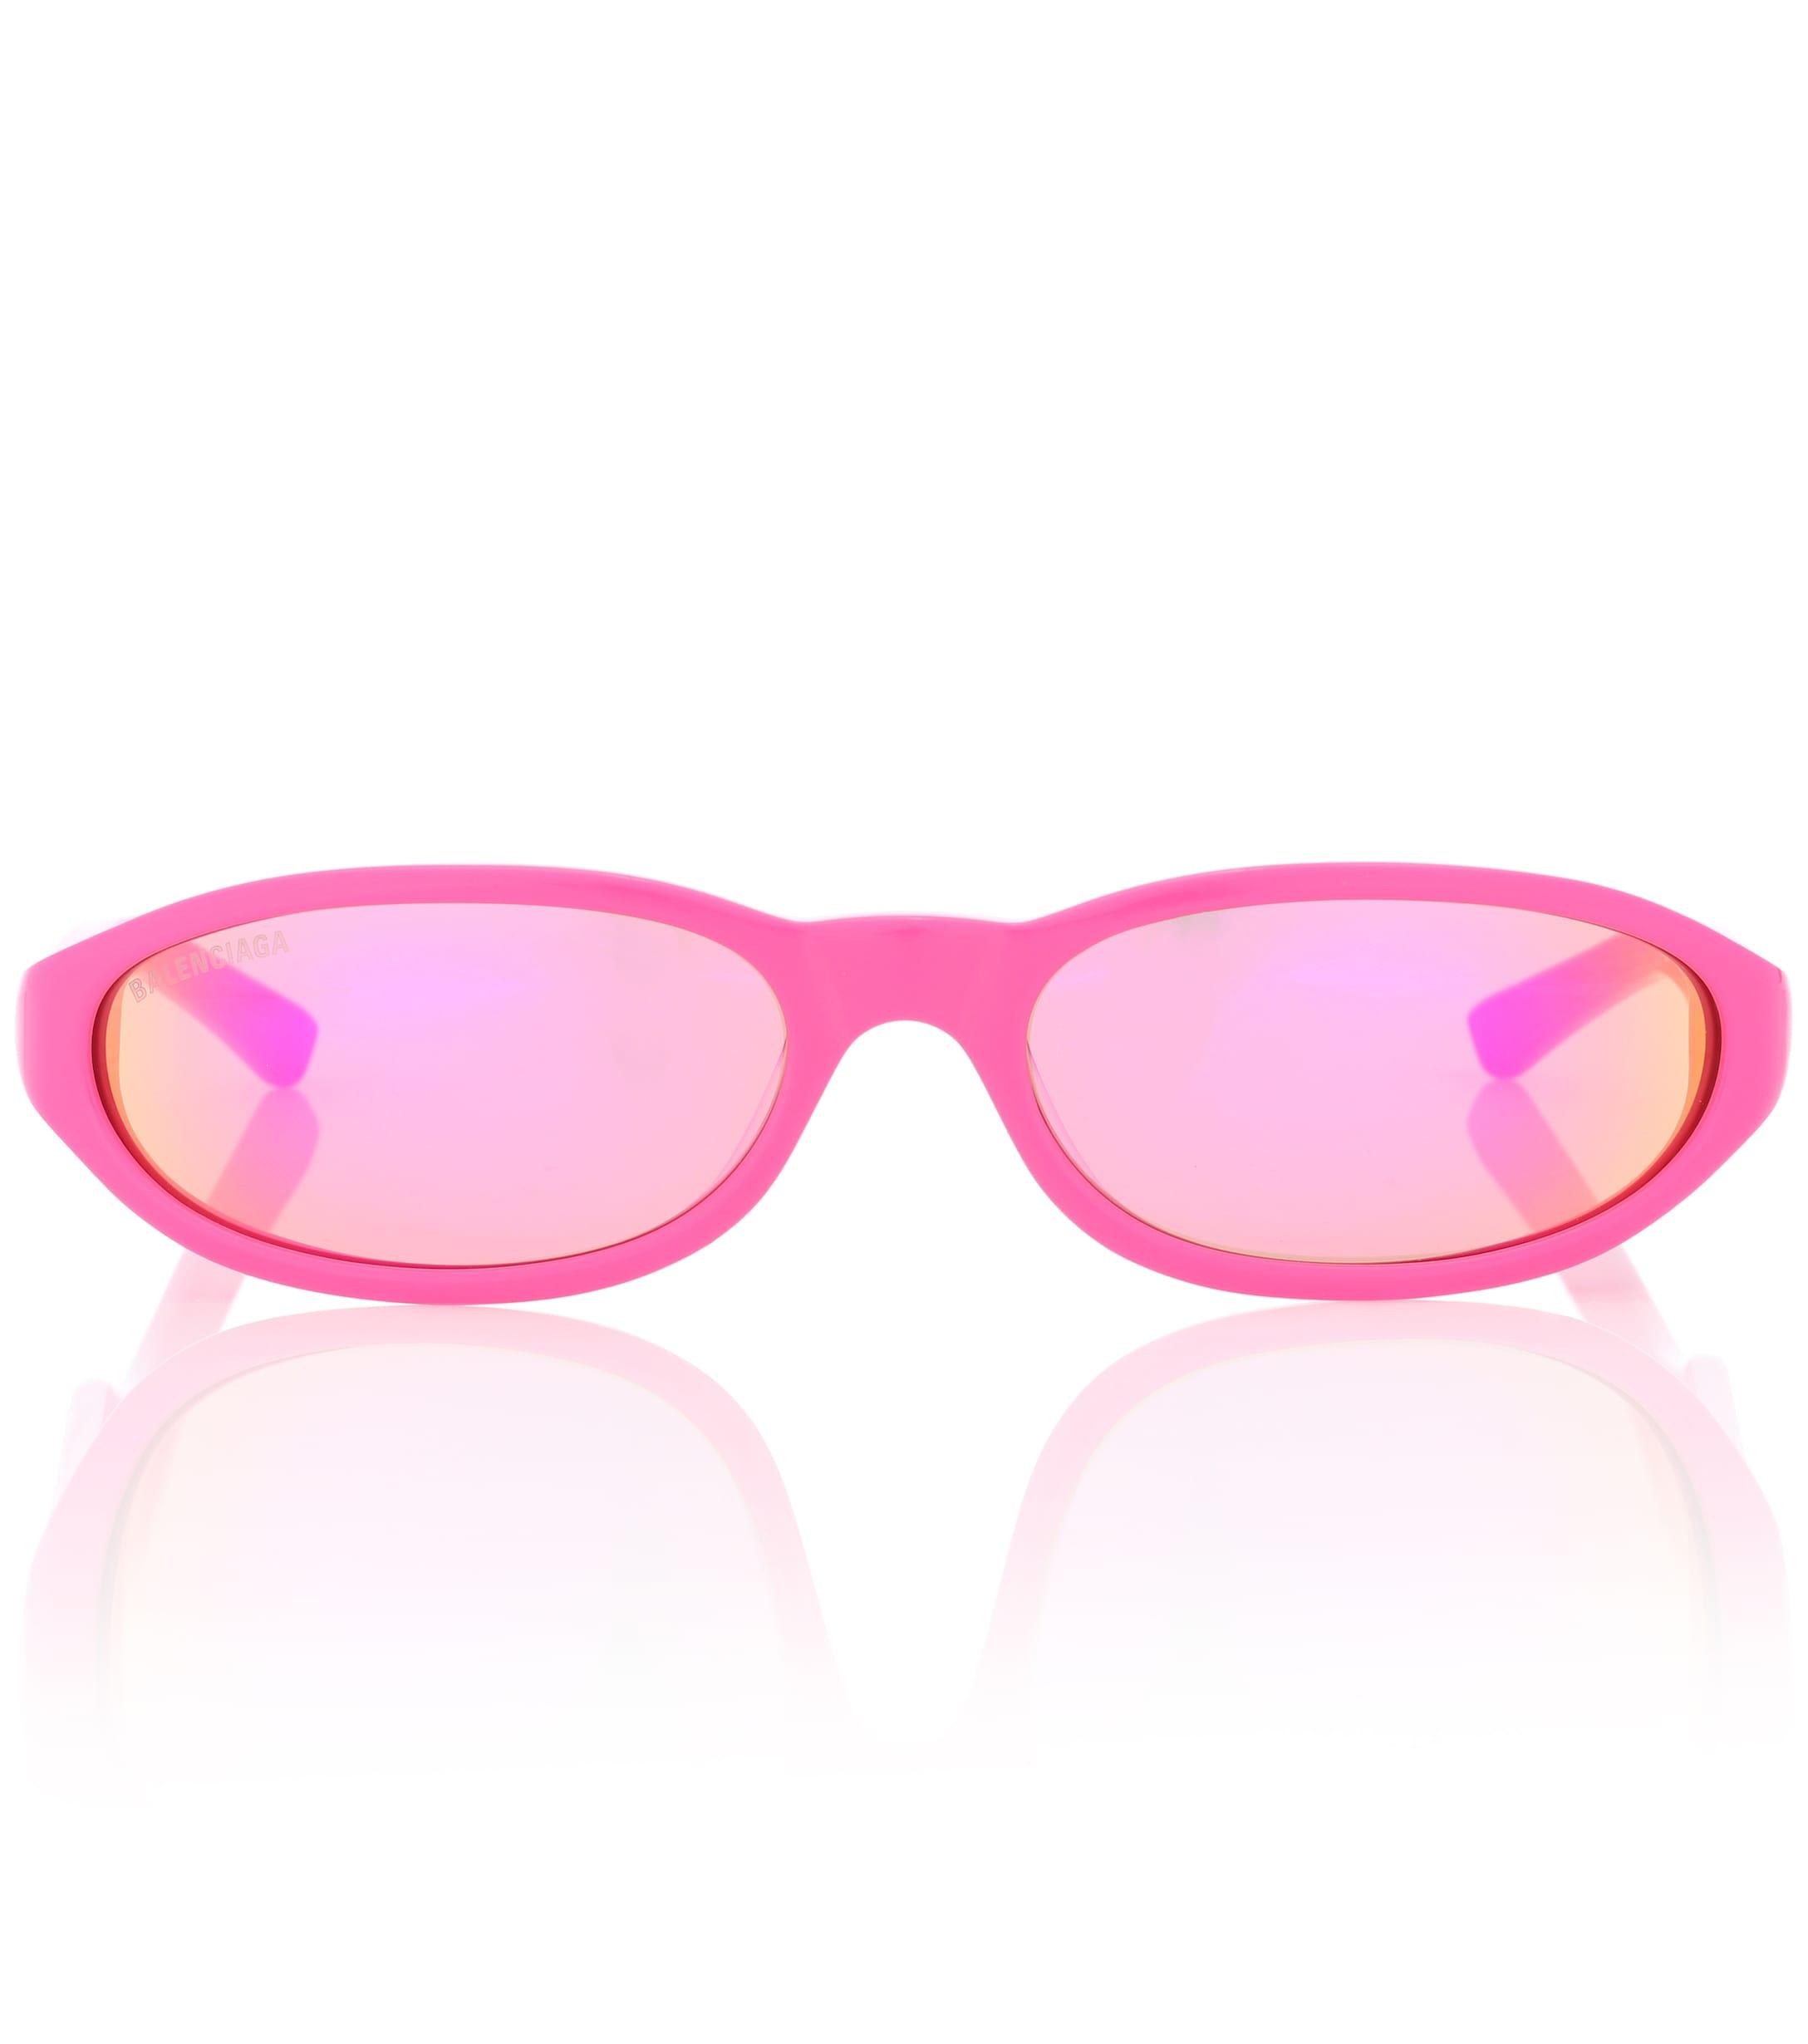 Без розовых очков. Balenciaga Neo очки. Balenciaga Pink очки. Розовые солнцезащитные очки. Детские розовые очки.